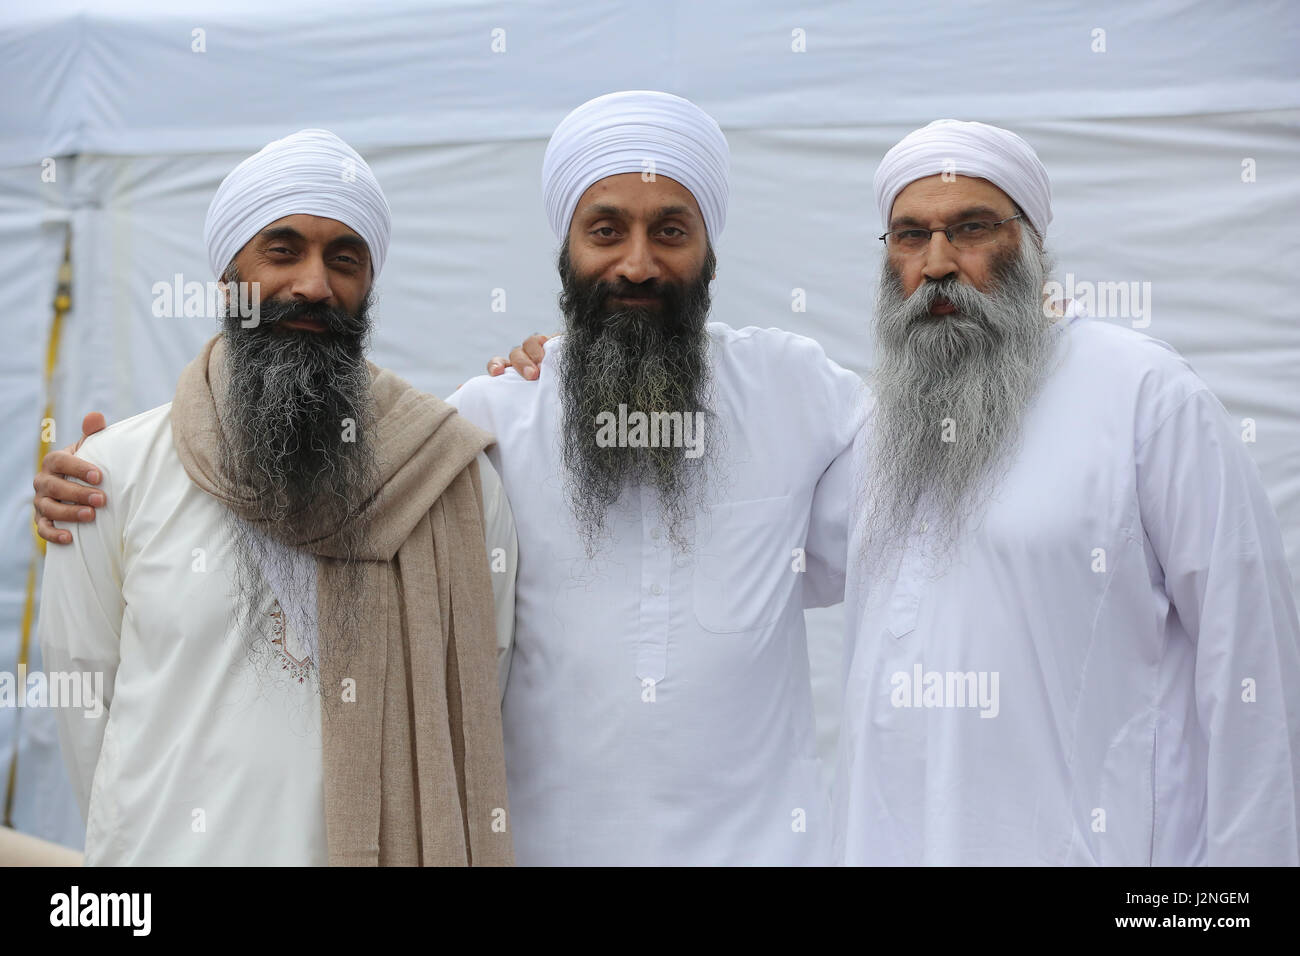 London, UK. 29. April 2017. Sikh-Männer posieren für Fotos. Hunderte von Menschen besuchen das Vaisakhi Festival auf dem Trafalgar Square. Das Vaisakhi-Festival ist ein religiöses fest, das die Sikh-Neujahr markiert. Diesjährigen Feierlichkeiten fand am 14. April der Beginn des Sikhismus als einen kollektiven glauben erinnert und Londoner Feierlichkeiten sind eine Möglichkeit für Menschen aus allen Gemeinden, Glaubensrichtungen und Hintergründe, eine Festival zu erleben, die von Sikhs, die Leben in der Hauptstadt und über 20 Millionen Menschen auf der ganzen Welt gefeiert wird. Bildnachweis: Dinendra Haria/Alamy Live-Nachrichten Stockfoto